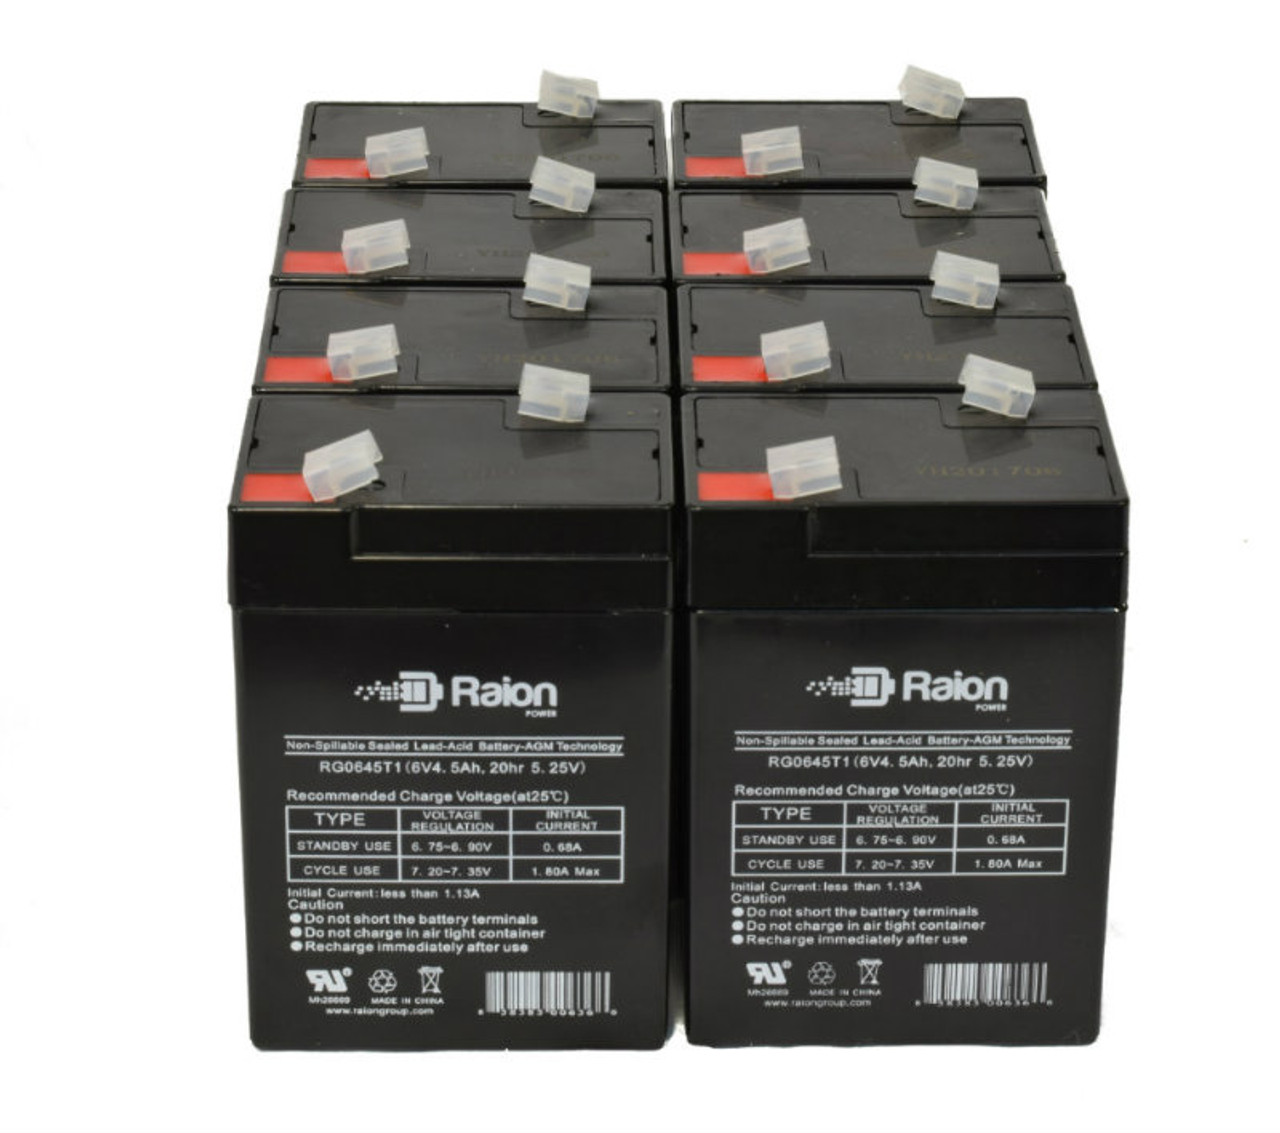 Raion Power 6V 4.5Ah Replacement Emergency Light Battery for Light DM3 - 8 Pack